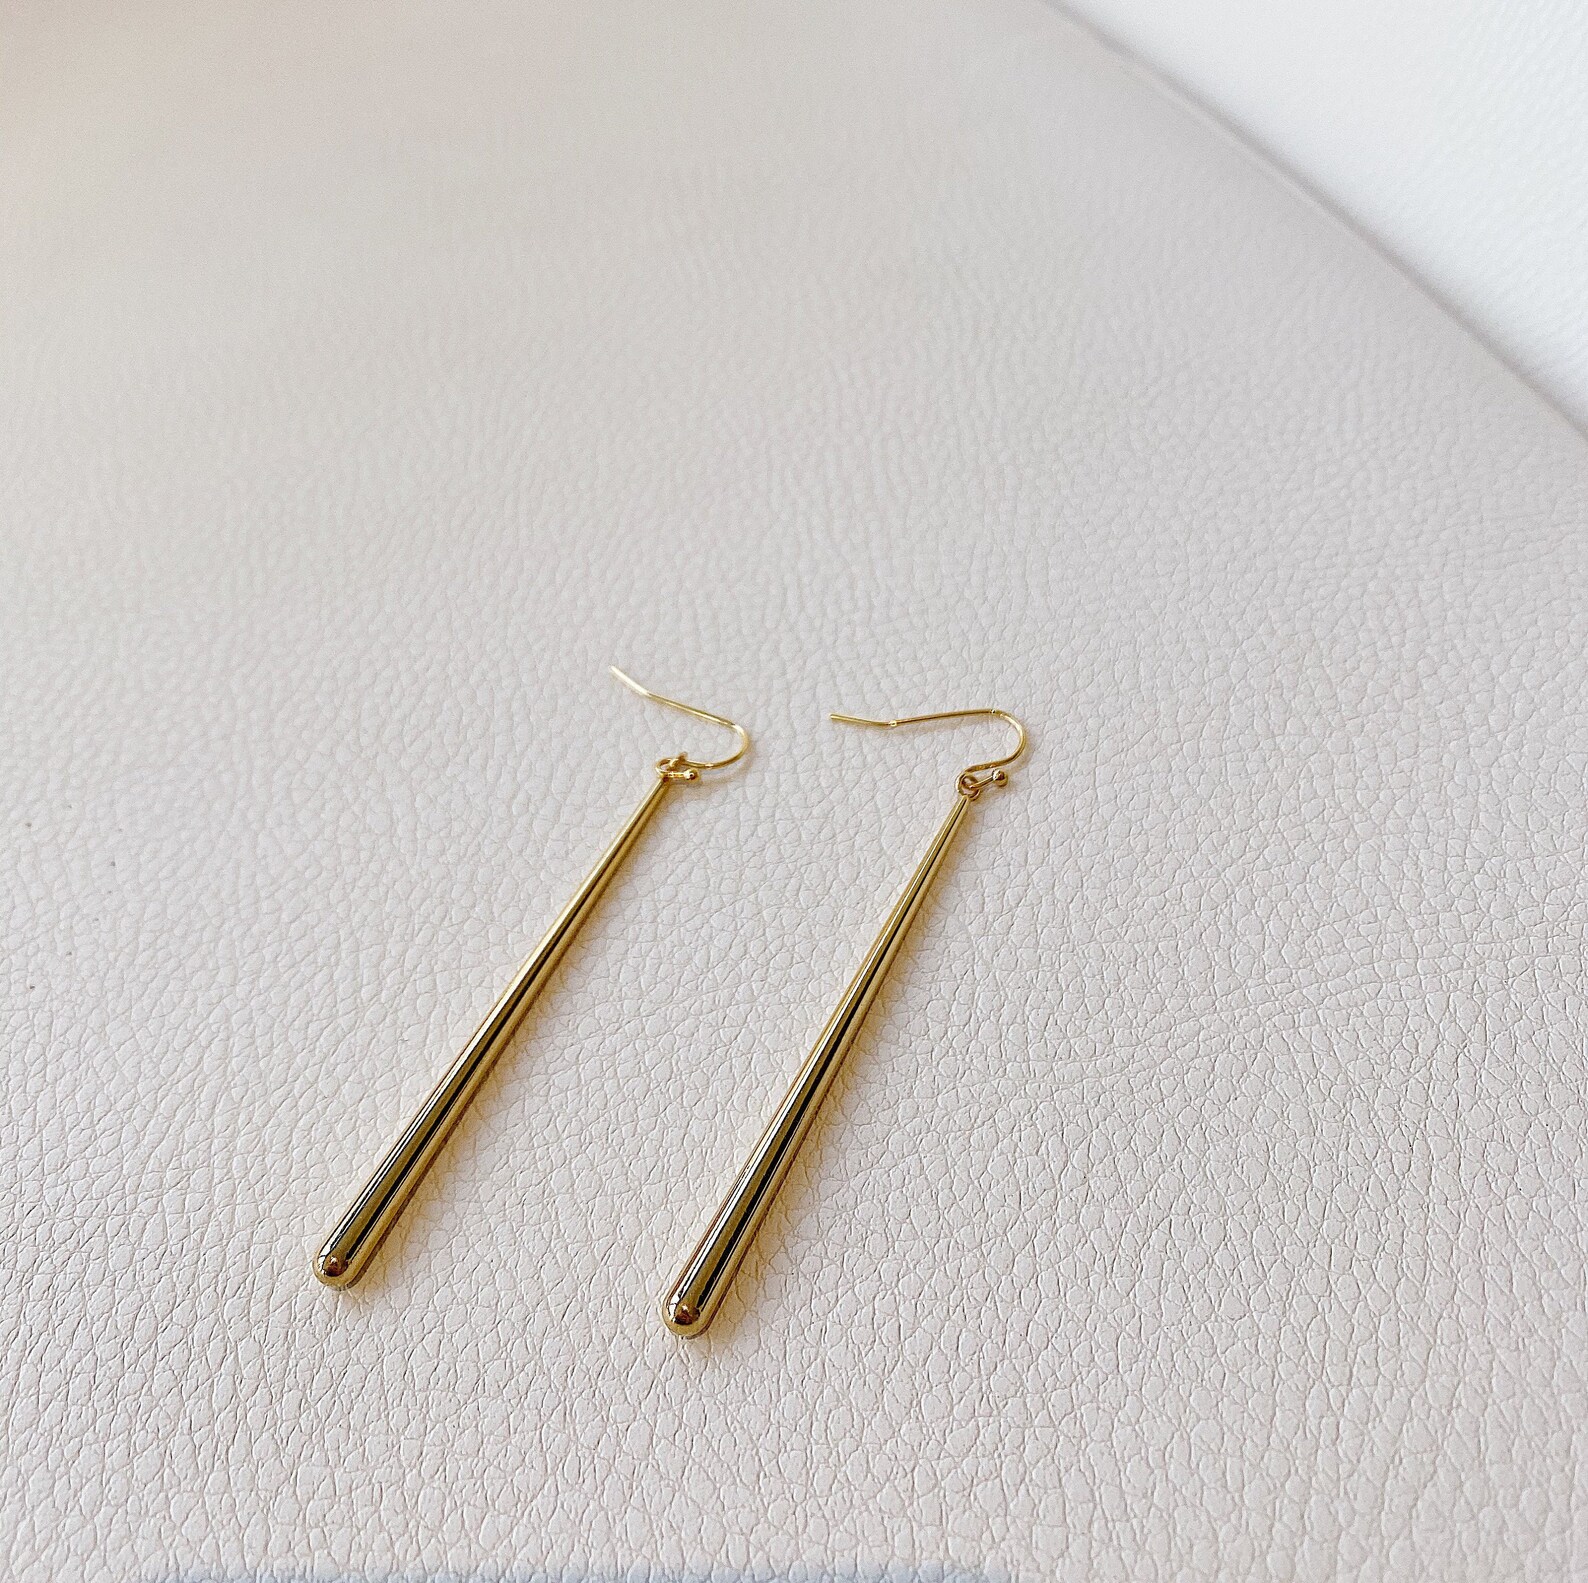 Simple Long Gold Earrings 60mm Gold Earrings Long Dangle | Etsy